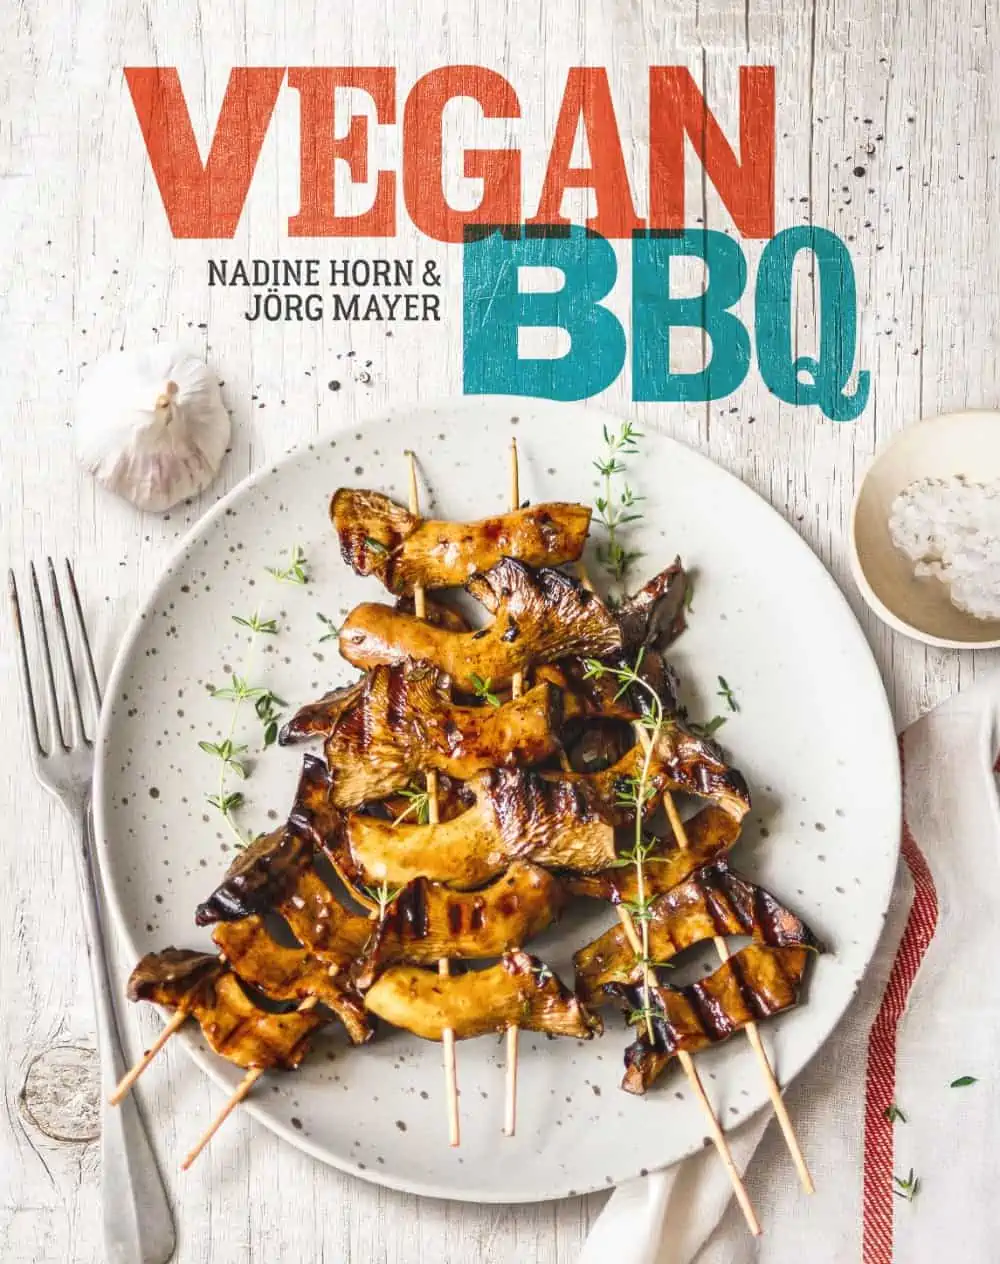 Grilled Potato Skins Recipe | Vegan Barbecue Recipe | Worldofvegan.com | #vegan #barbecue #potatos #skins #grilled #worldofvegan